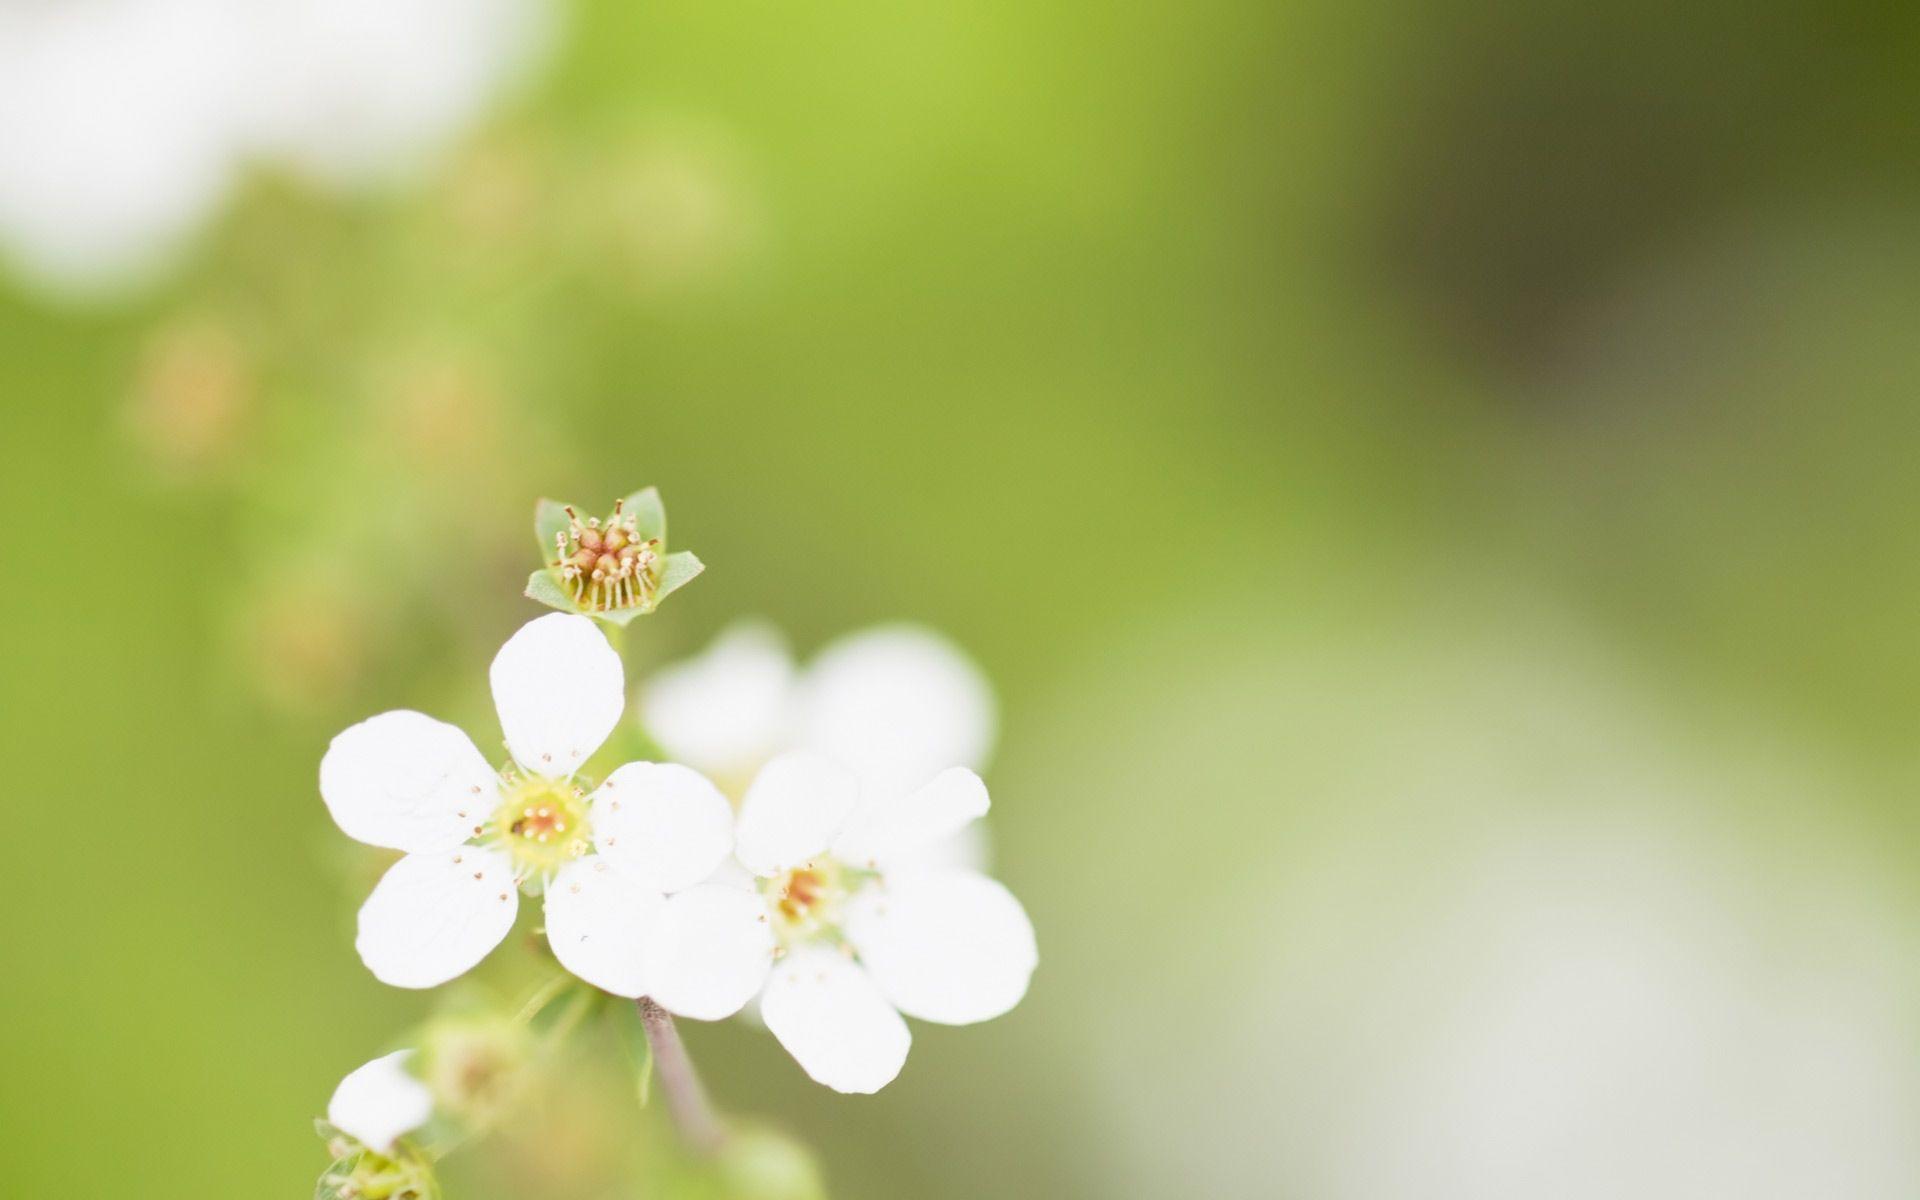 Desktop Wallpaper · Gallery · Nature · Spring blooming flowers